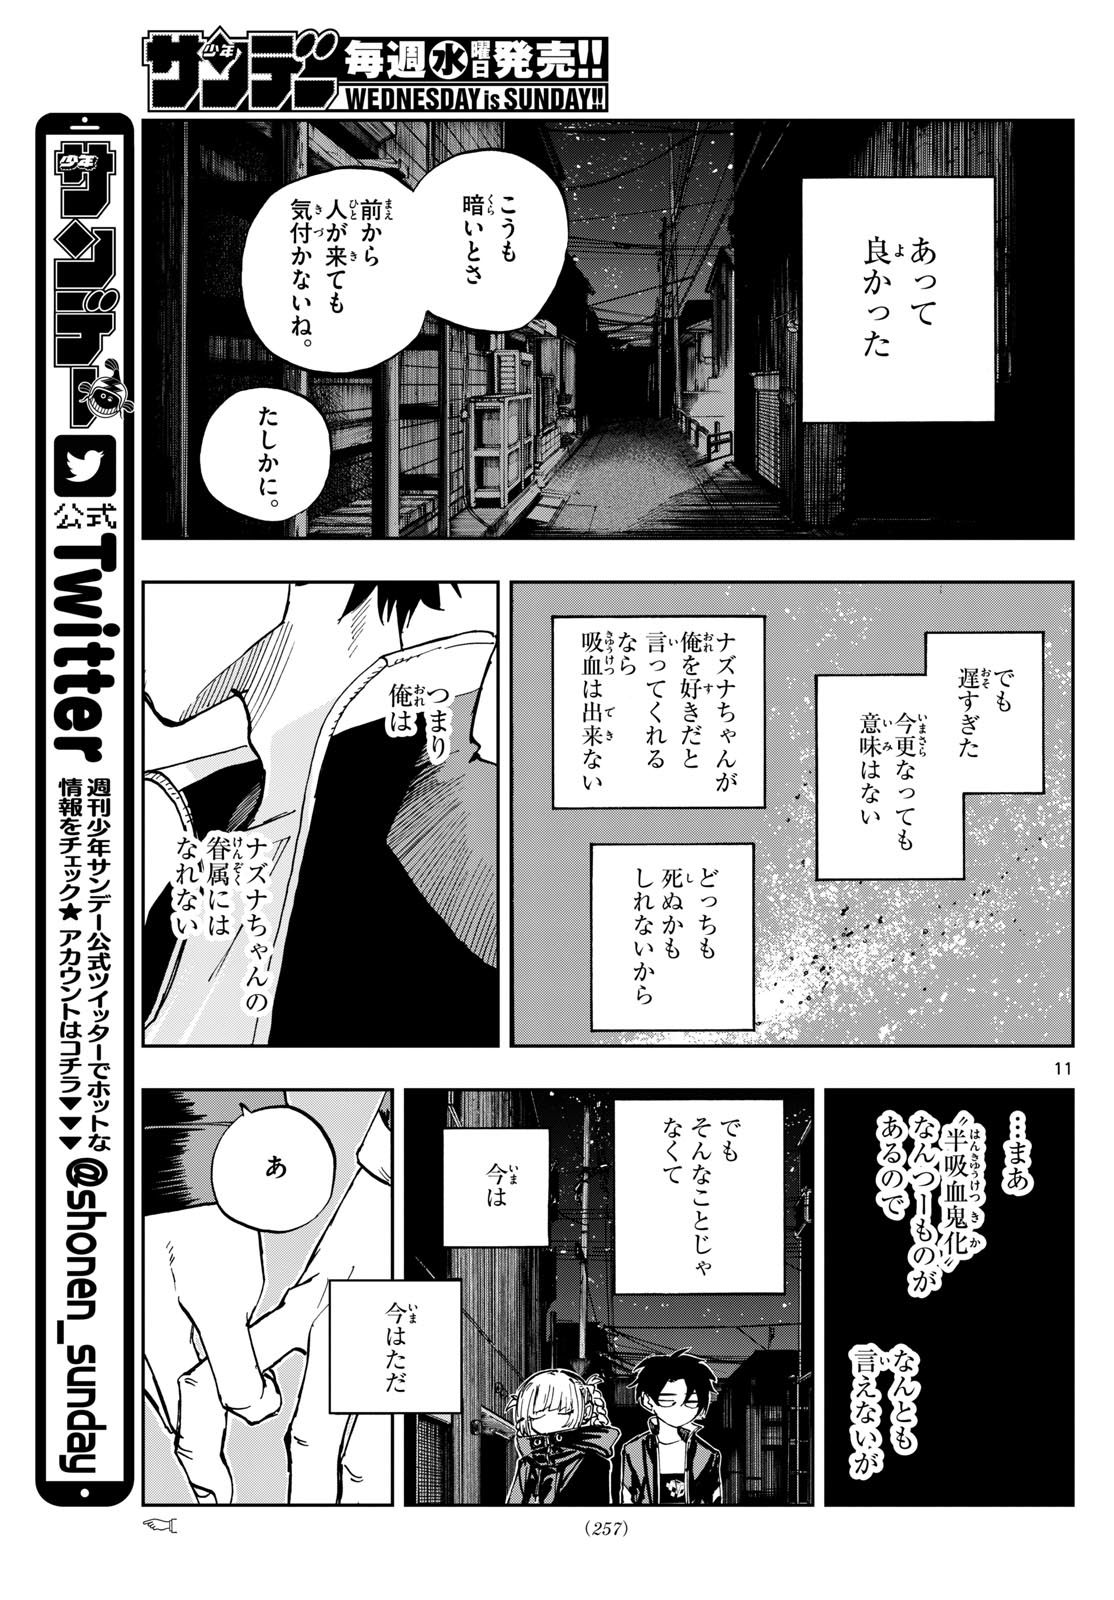 1  Chapter 188 - Yofukashi no Uta - MangaDex